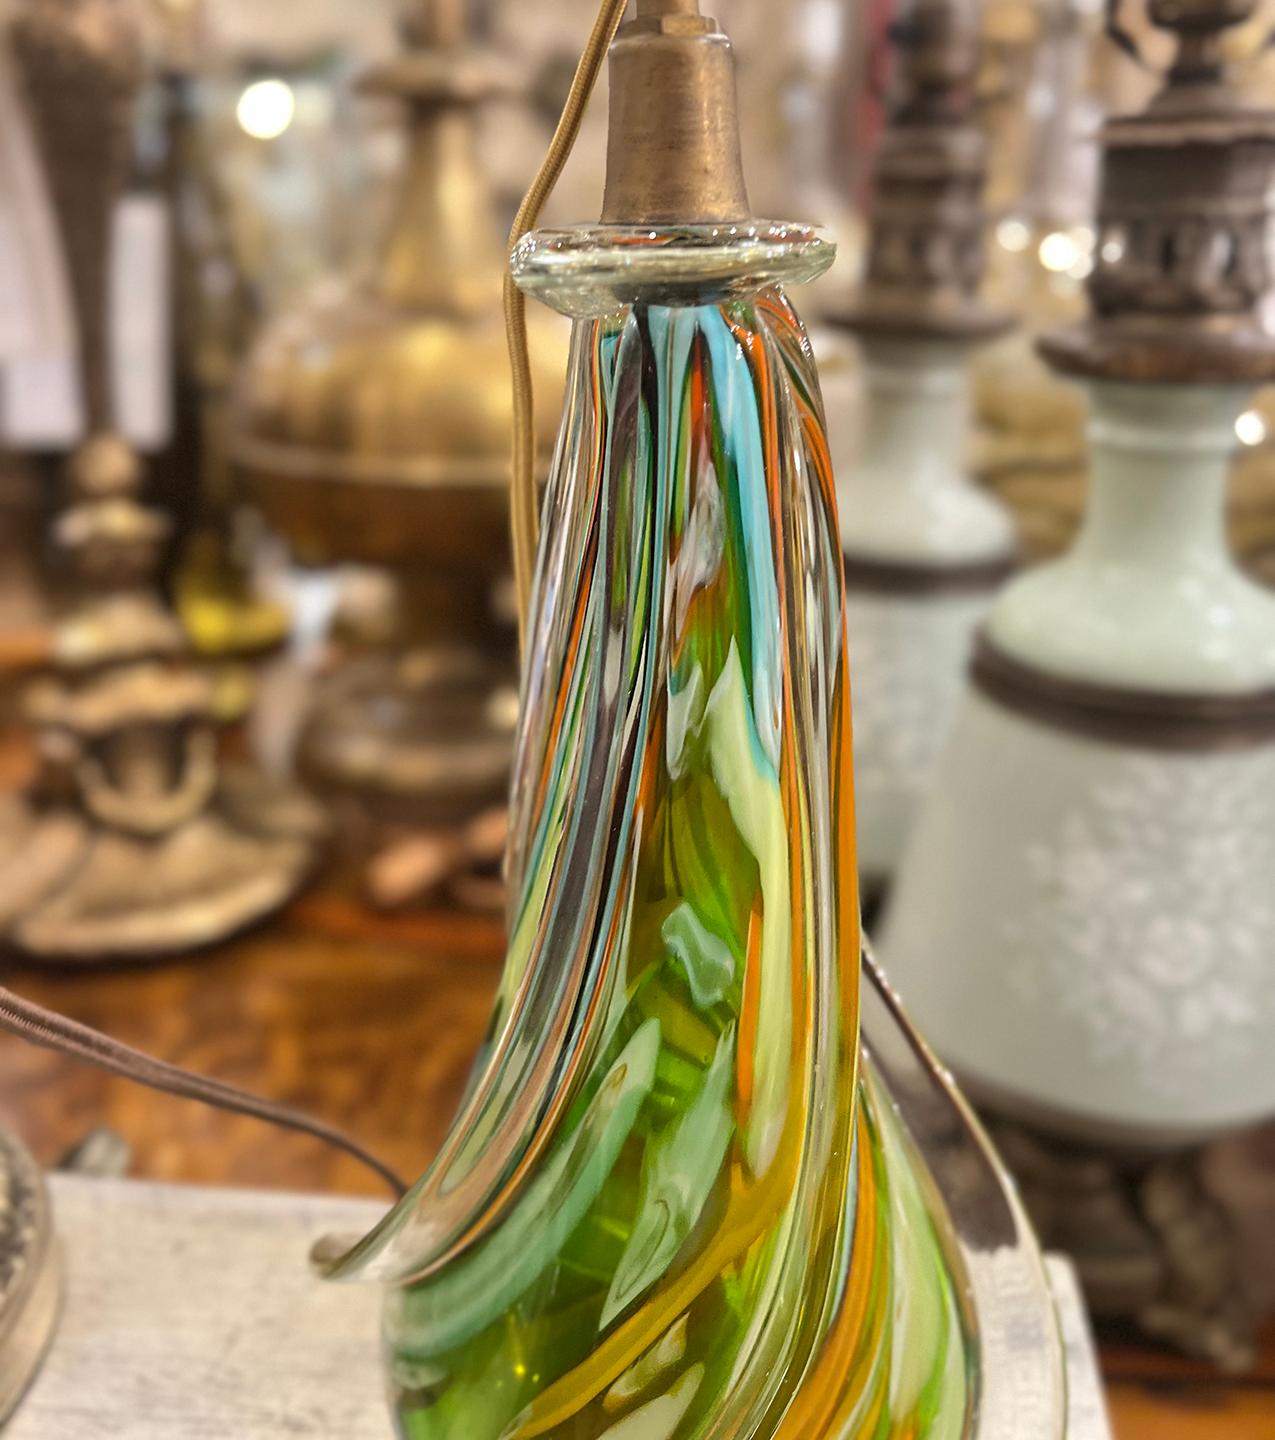 Eine italienische Lampe aus mundgeblasenem Murano-Glas aus den 1950er Jahren.

Abmessungen:
Höhe: 11